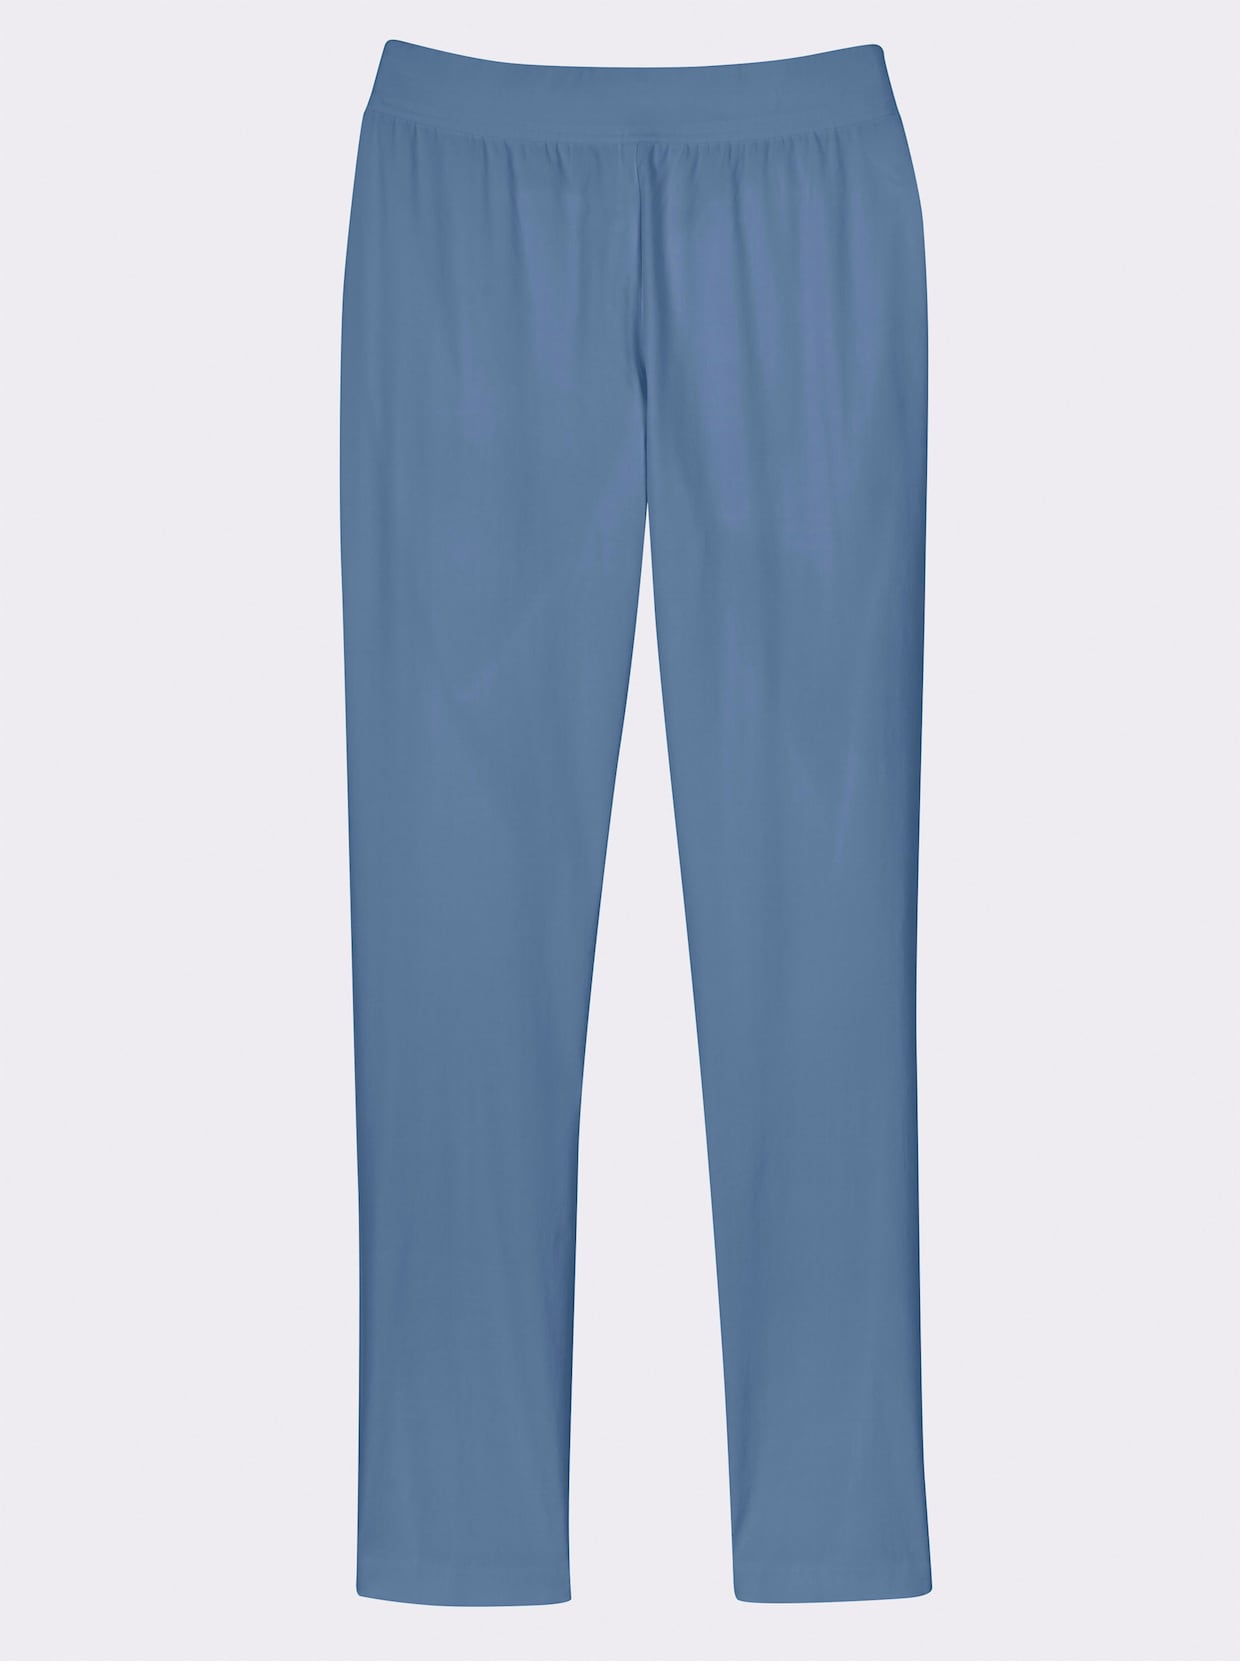 Bengalínové nohavice - jemná modrá